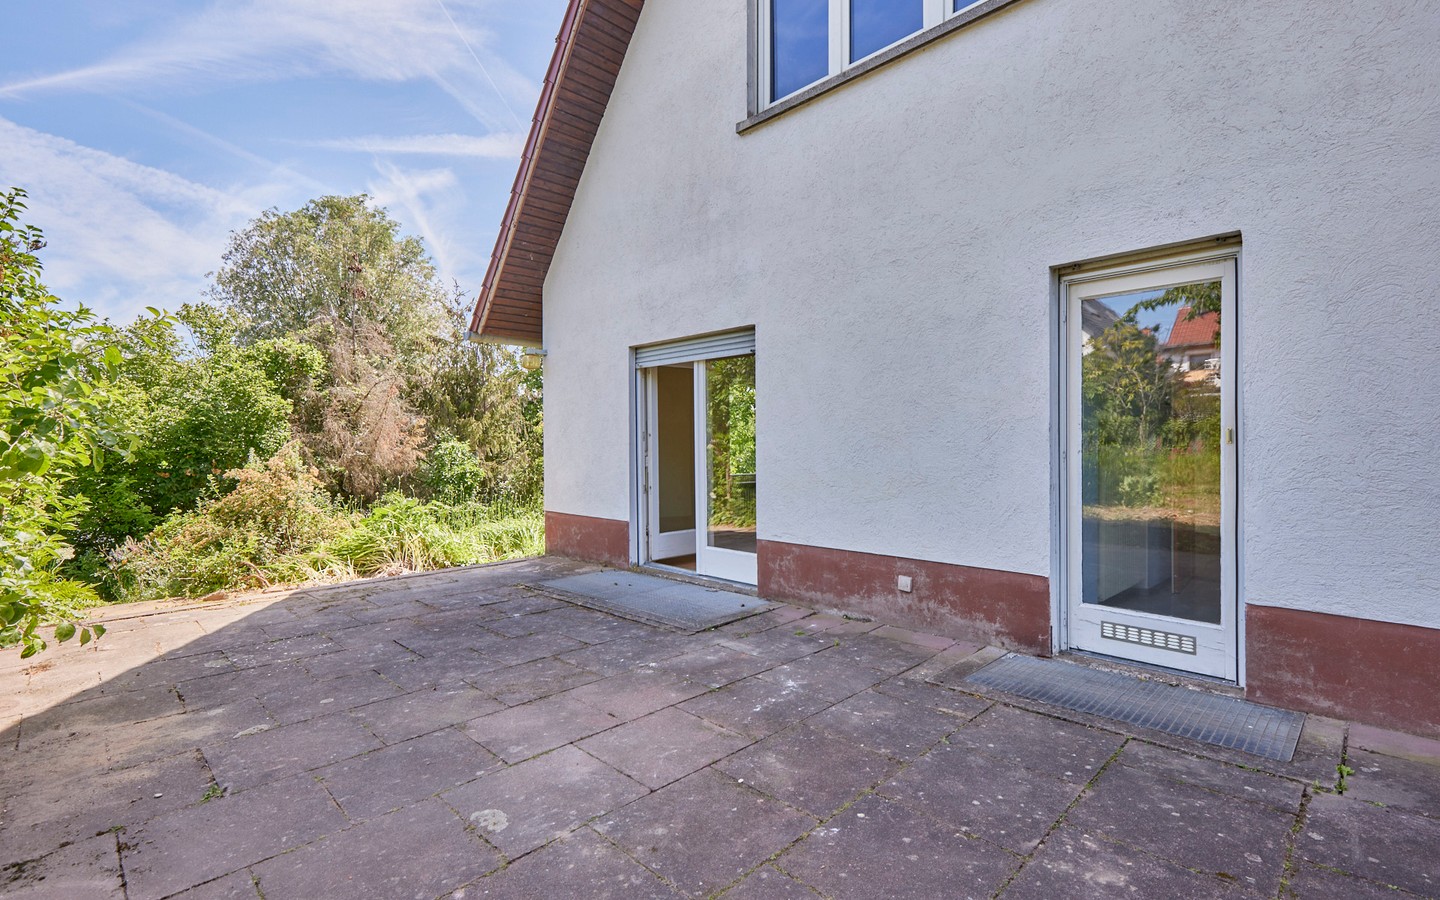 Terrasse - Sanierungsbedürftiges Einfamilienhaus am Neckar mit Garten und Ausbaupotenzial für zwei Familien